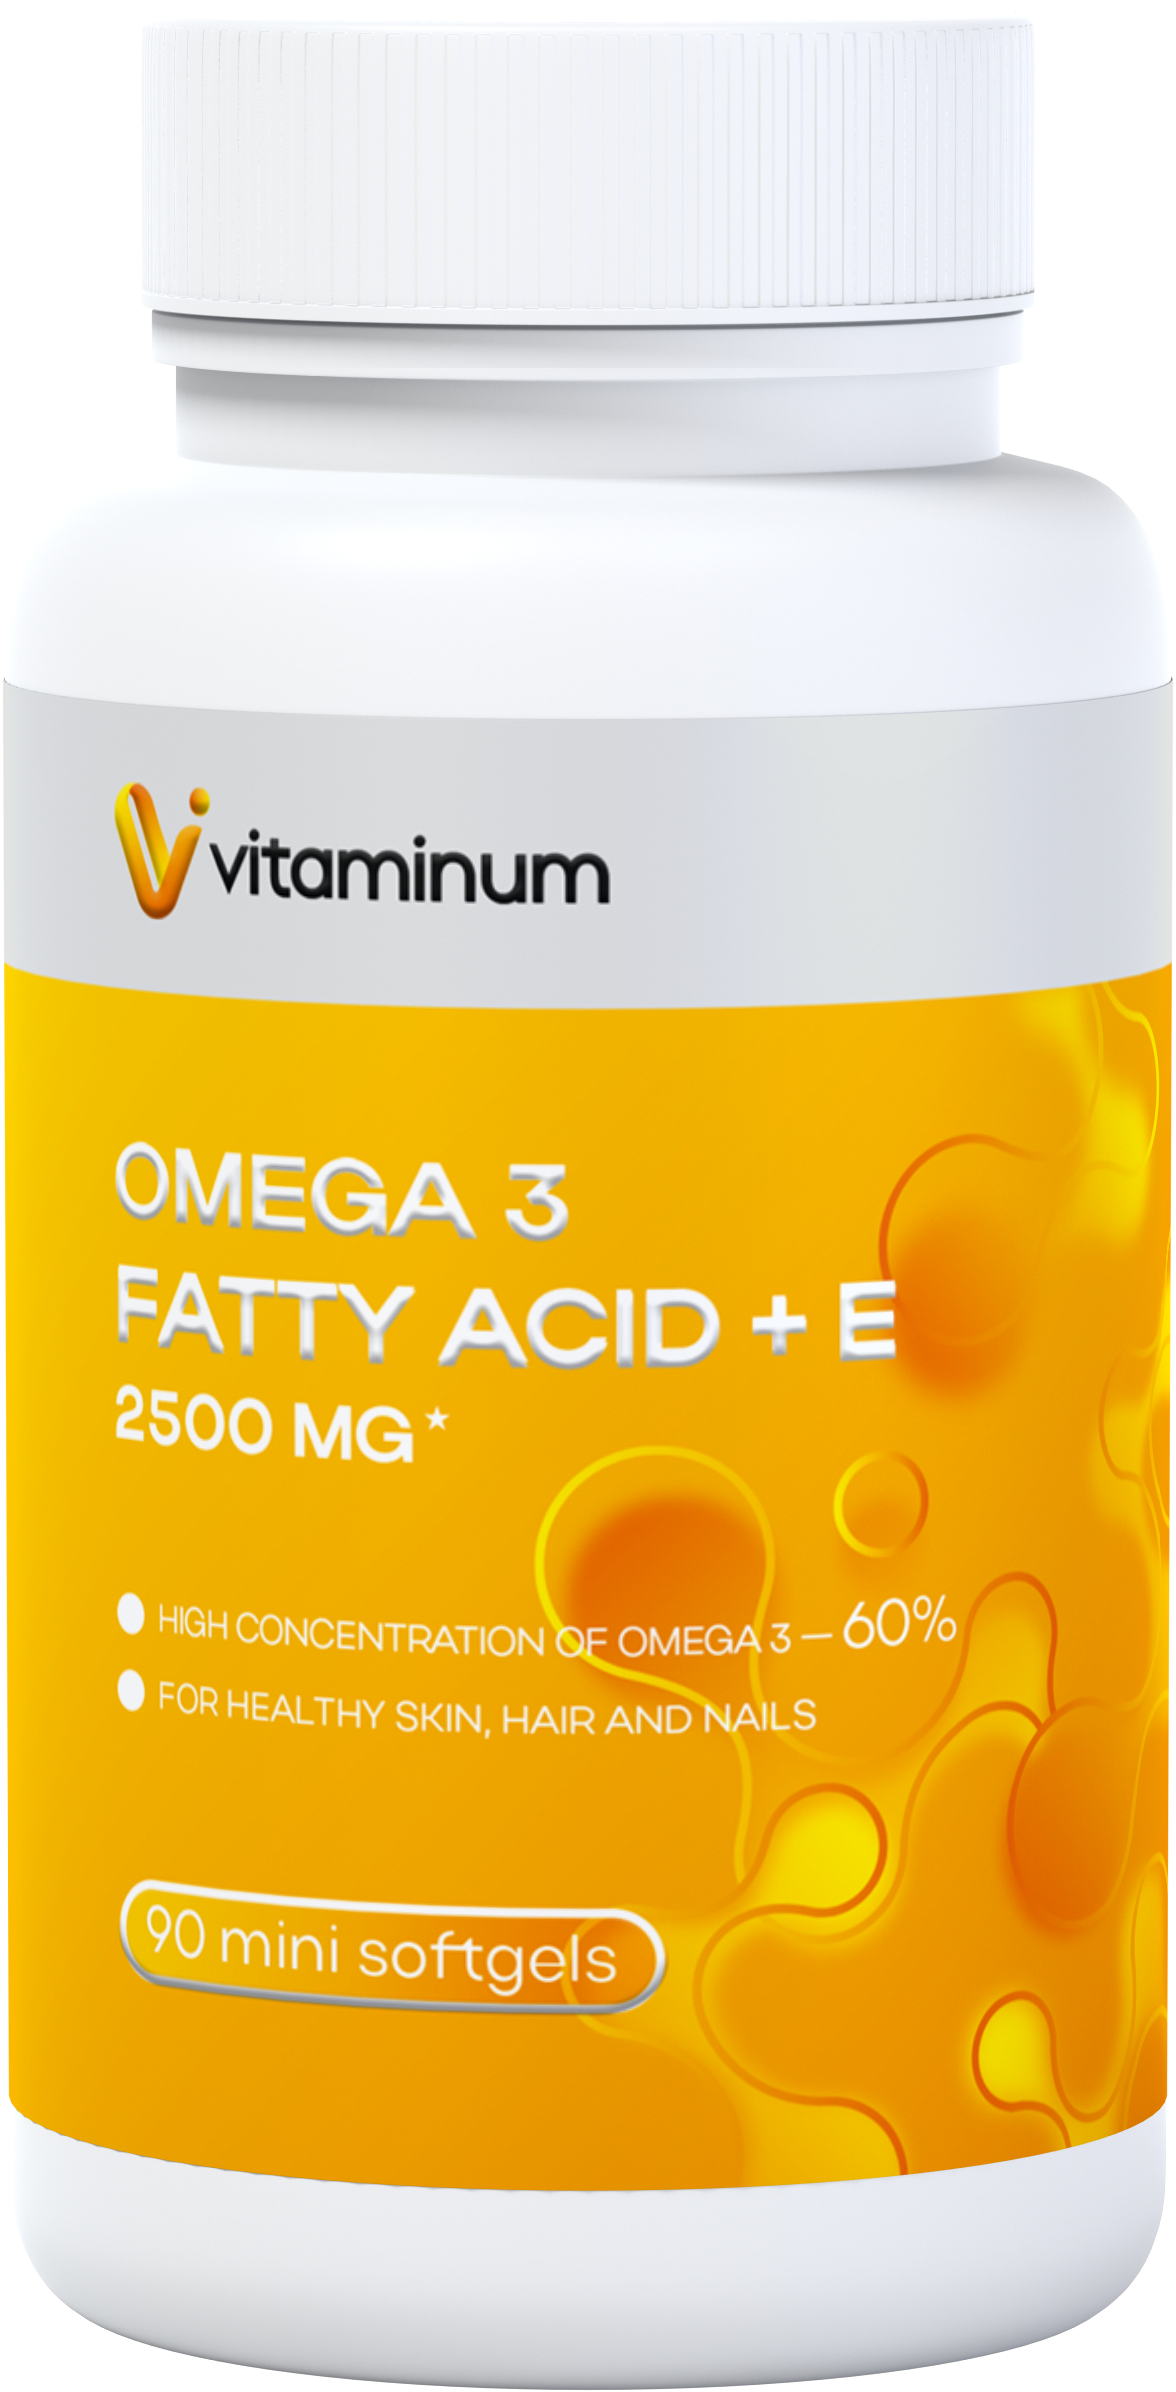  Vitaminum ОМЕГА 3 60% + витамин Е (2500 MG*) 90 капсул 700 мг   в Судаке